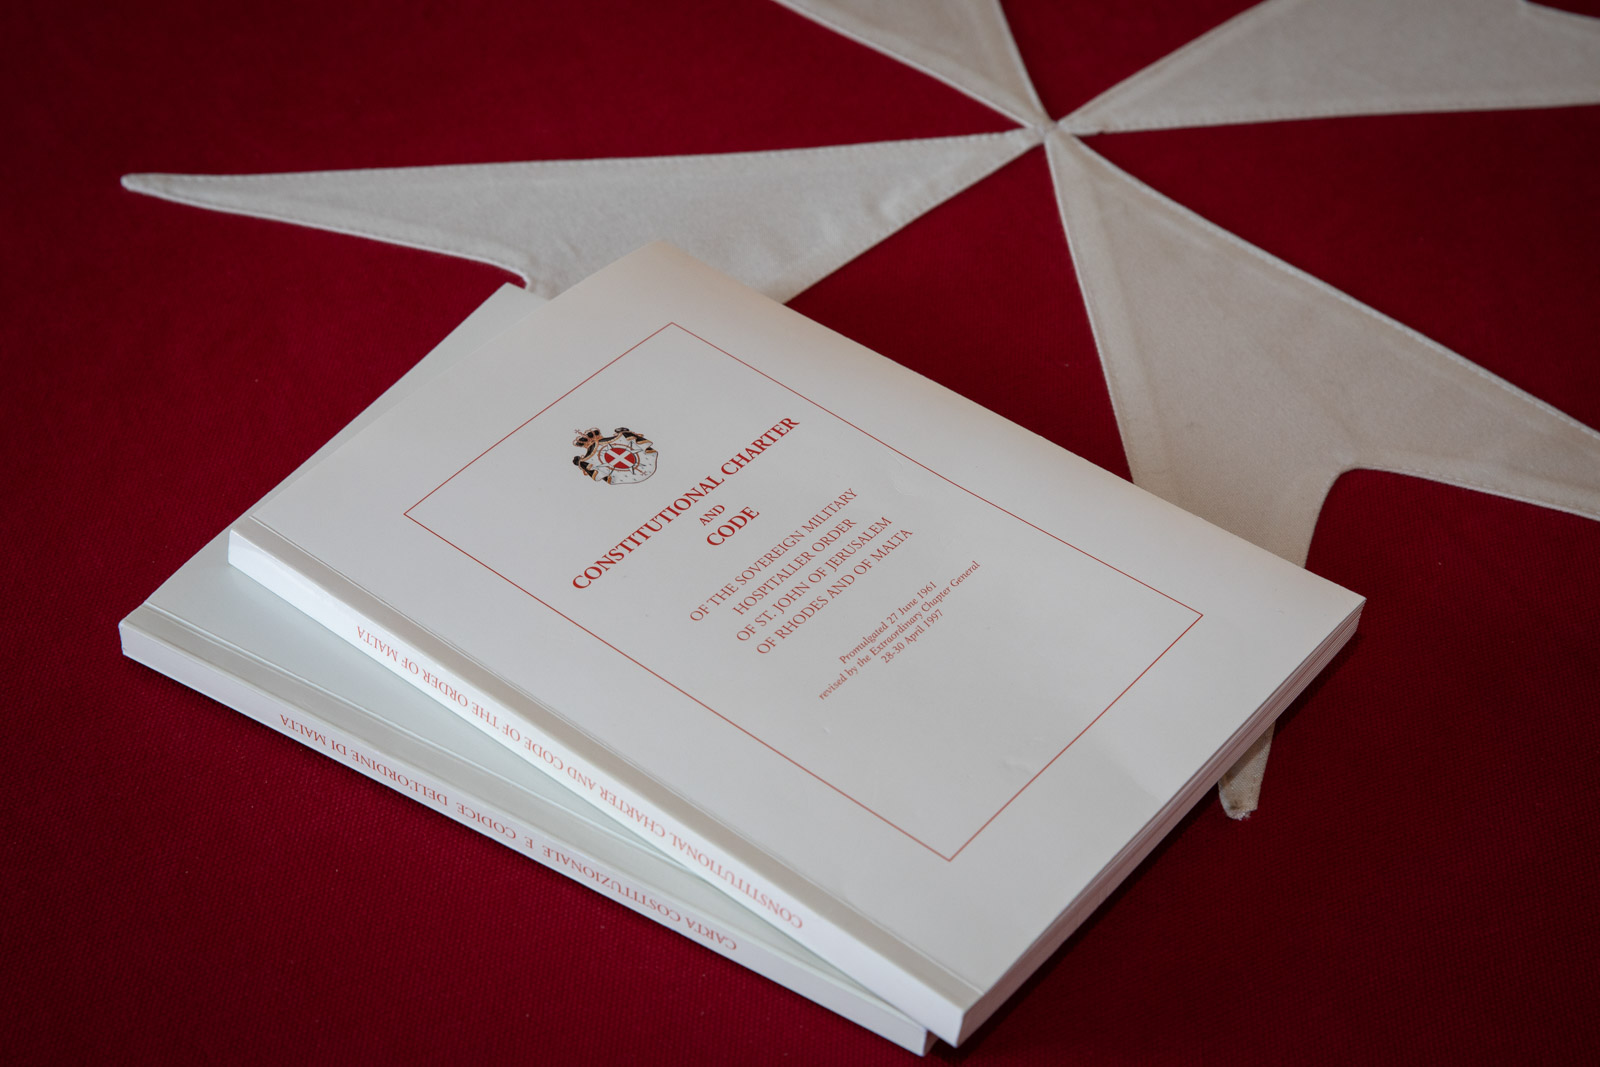 La nuova Costituzione dell’Ordine di Malta